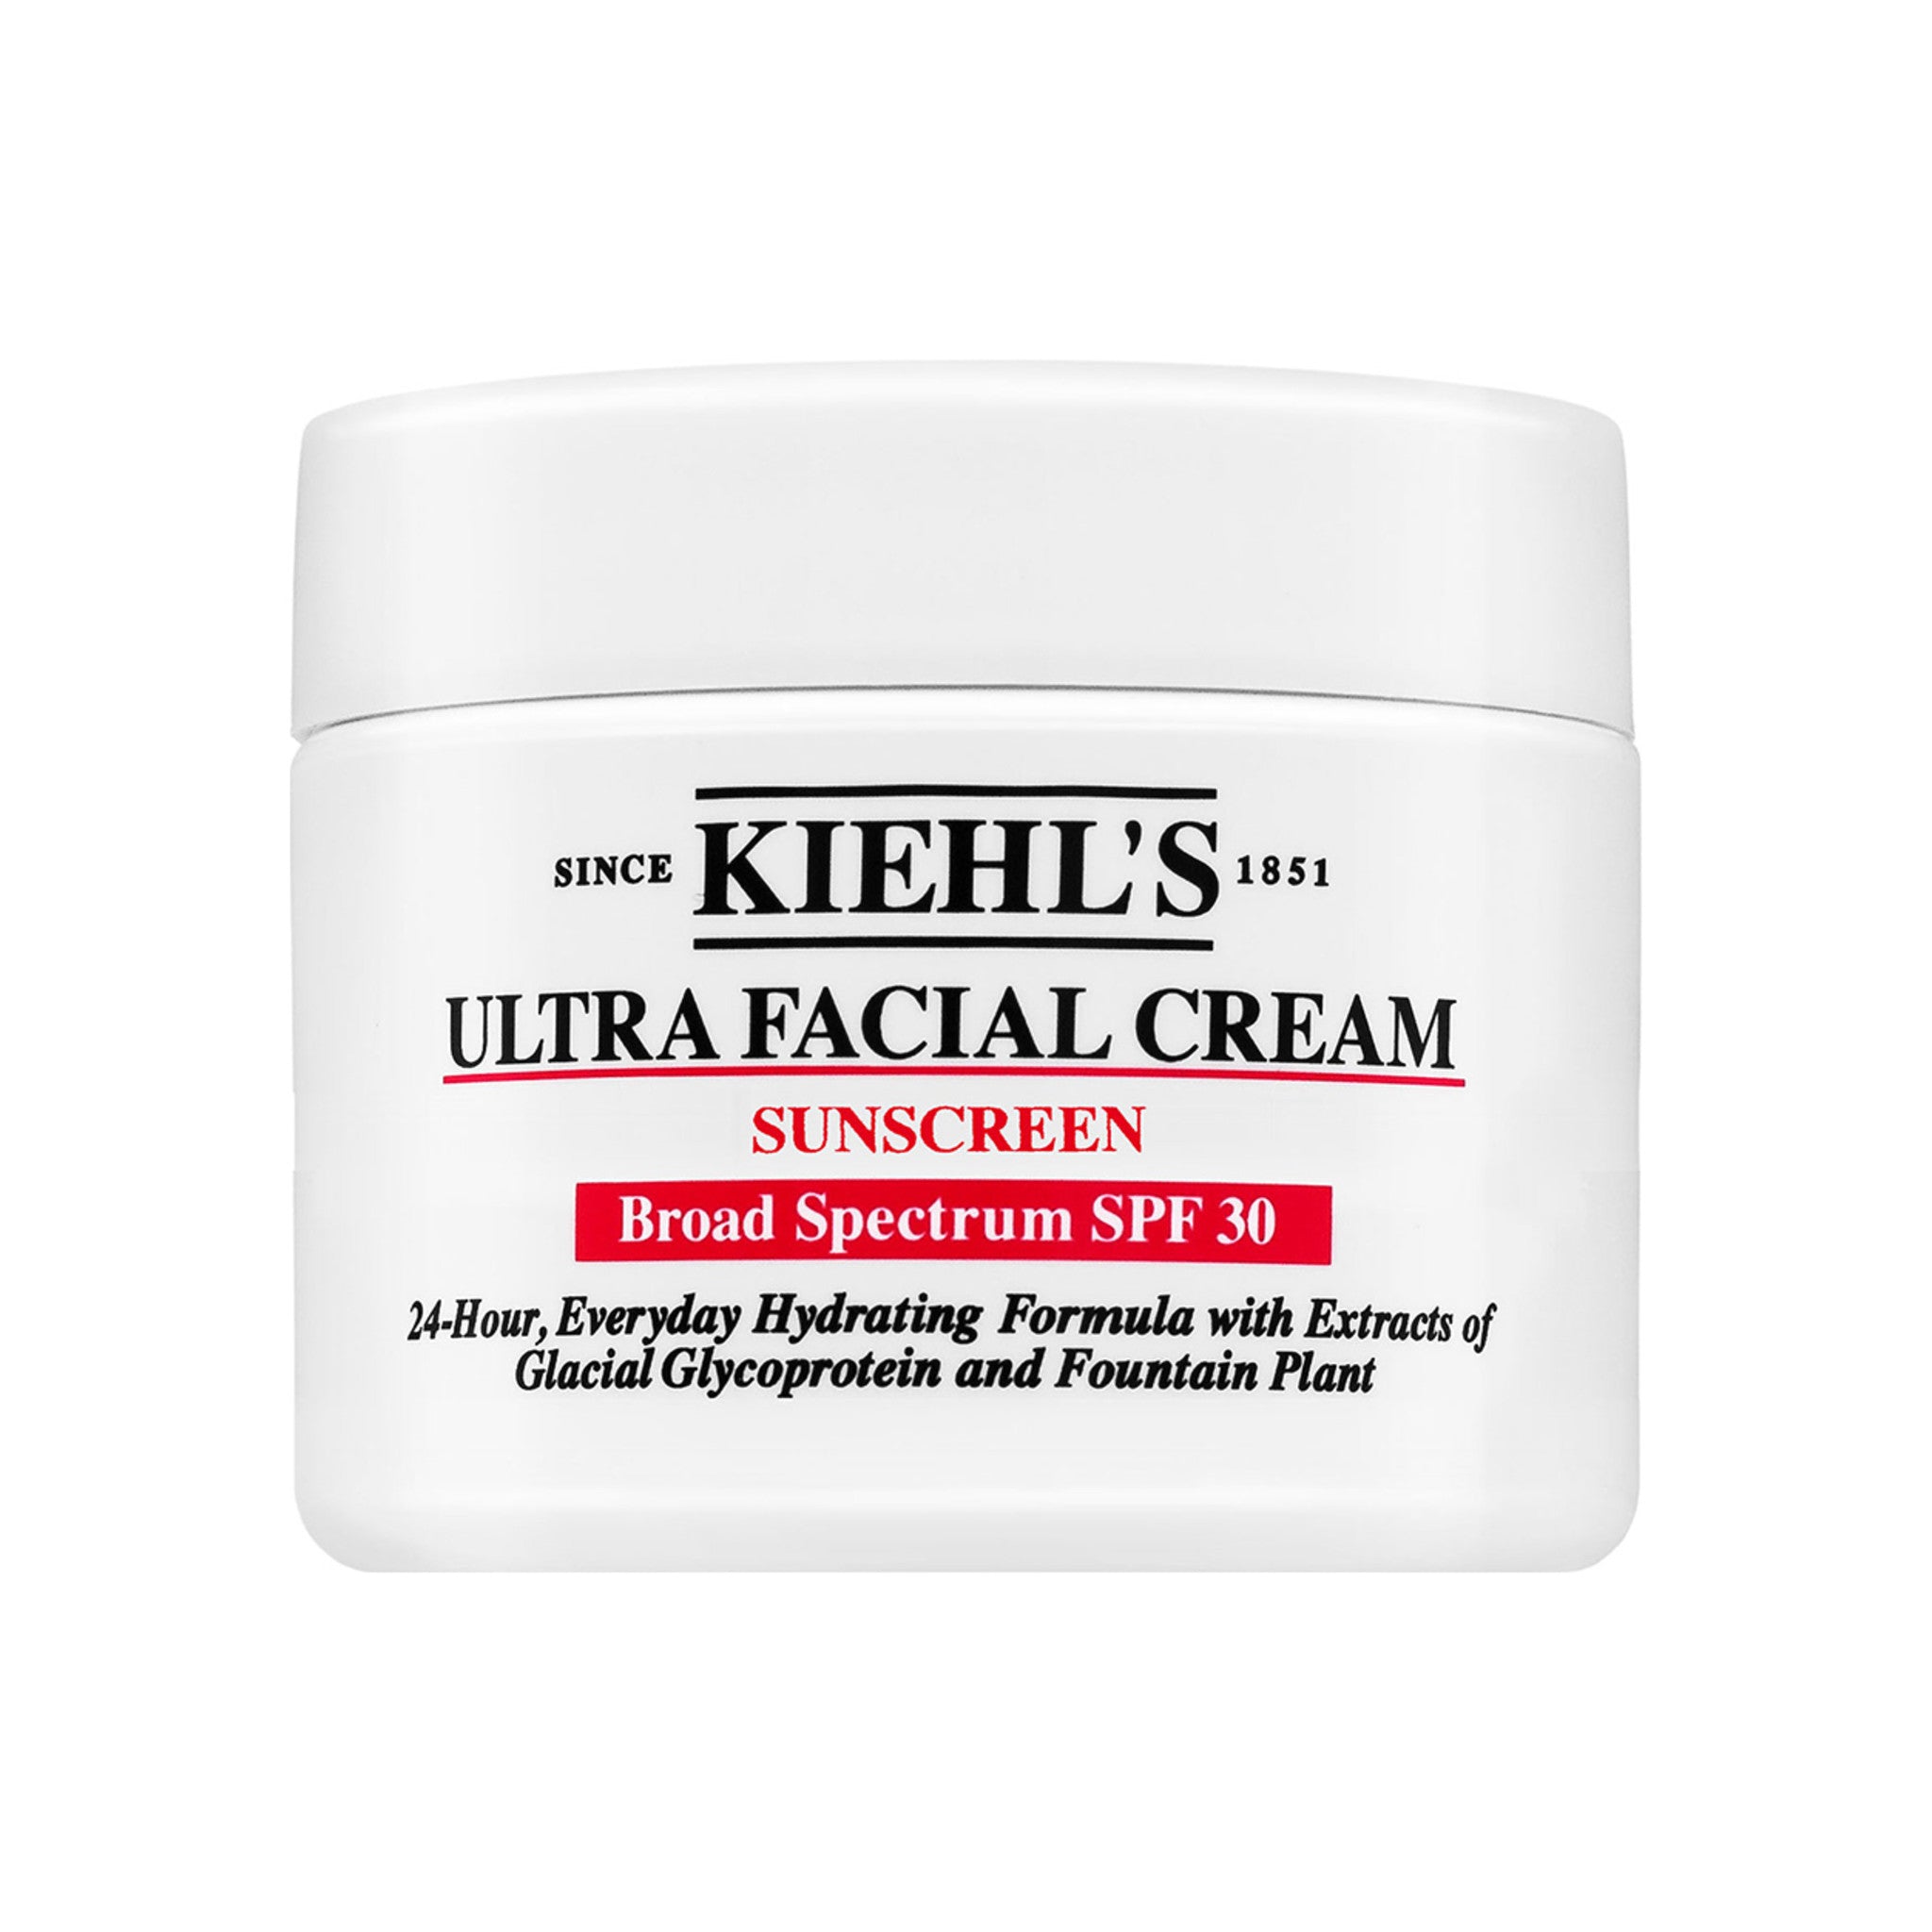 Ultra Facial Cream SPF 30 main image.